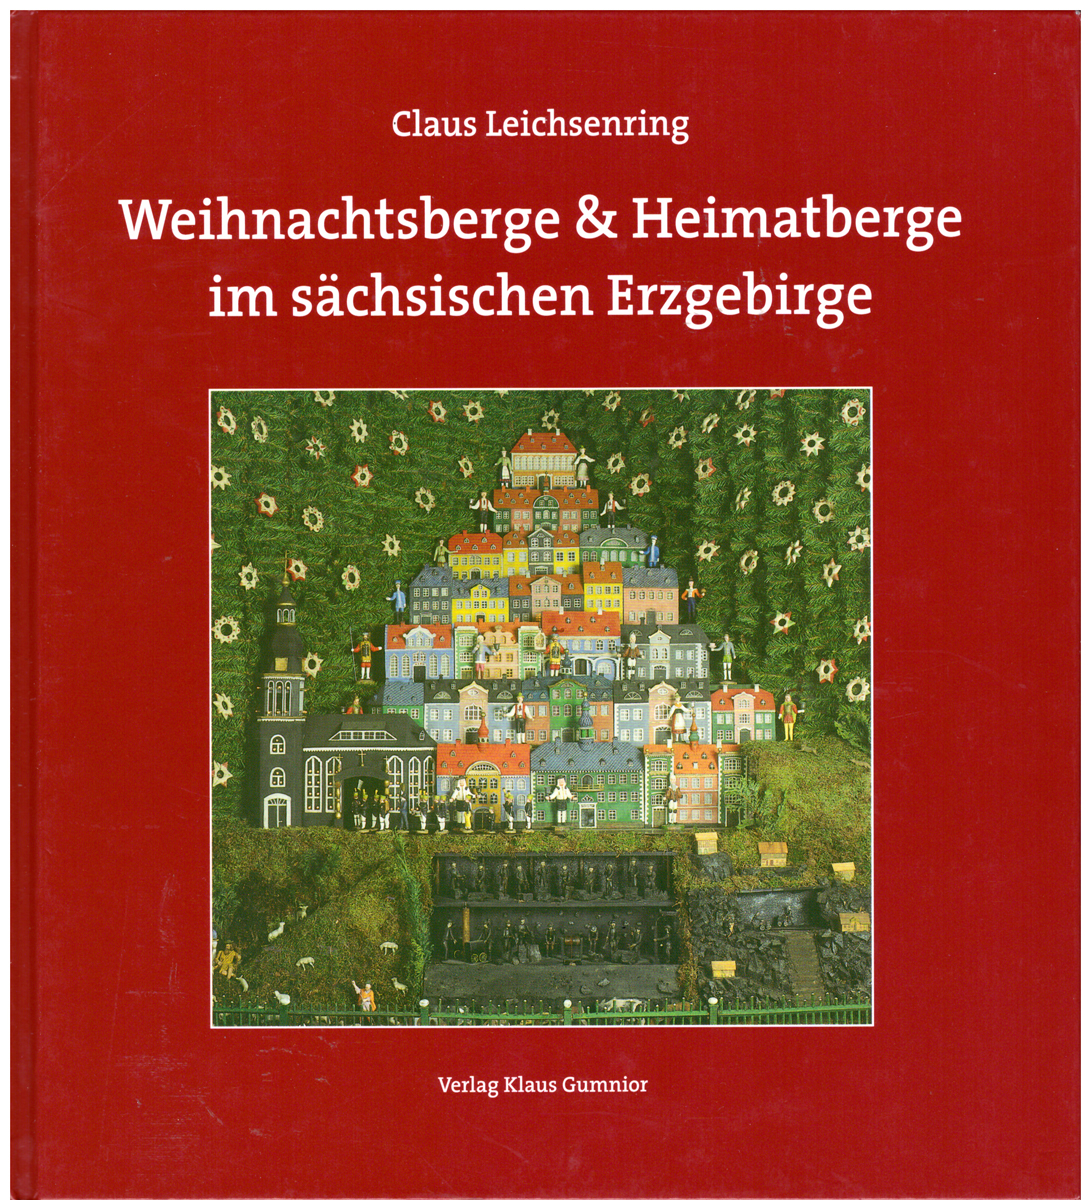 Weihnachtsberge & Heimatberge : ein Beitrag zur Geschichte der Volkskultur im sächsischen Erzgebirge / - Claus Leichsenring.